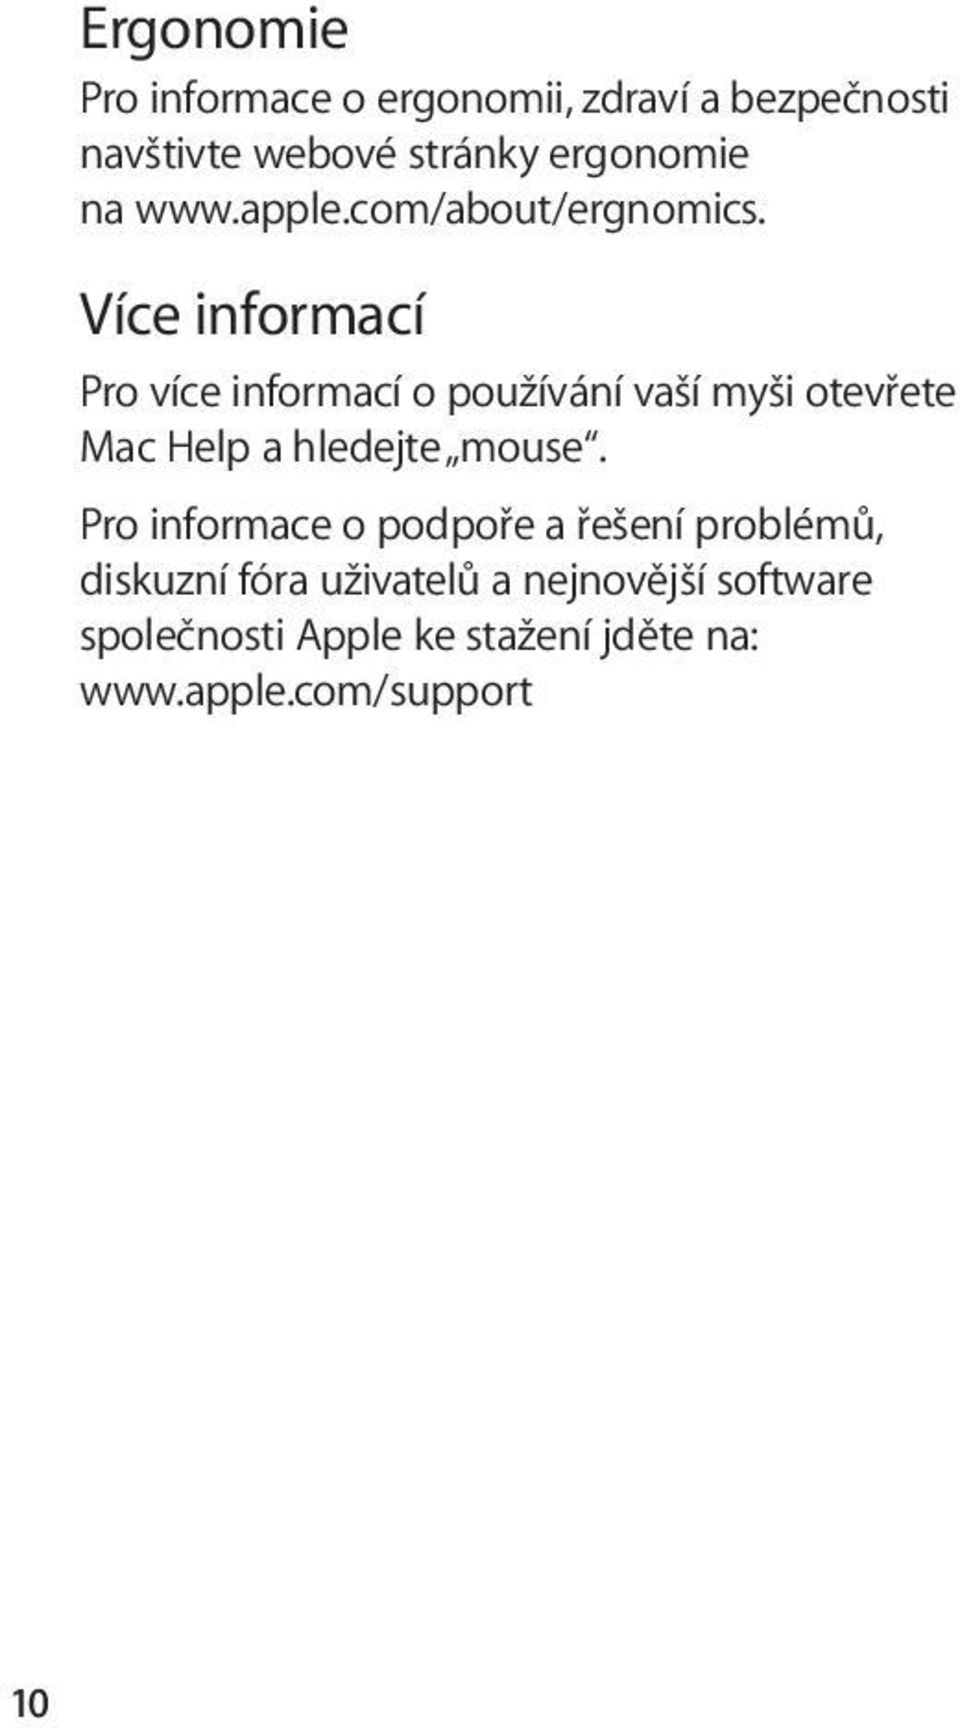 Více informací Pro více informací o používání vaší myši otevřete Mac Help a hledejte mouse.